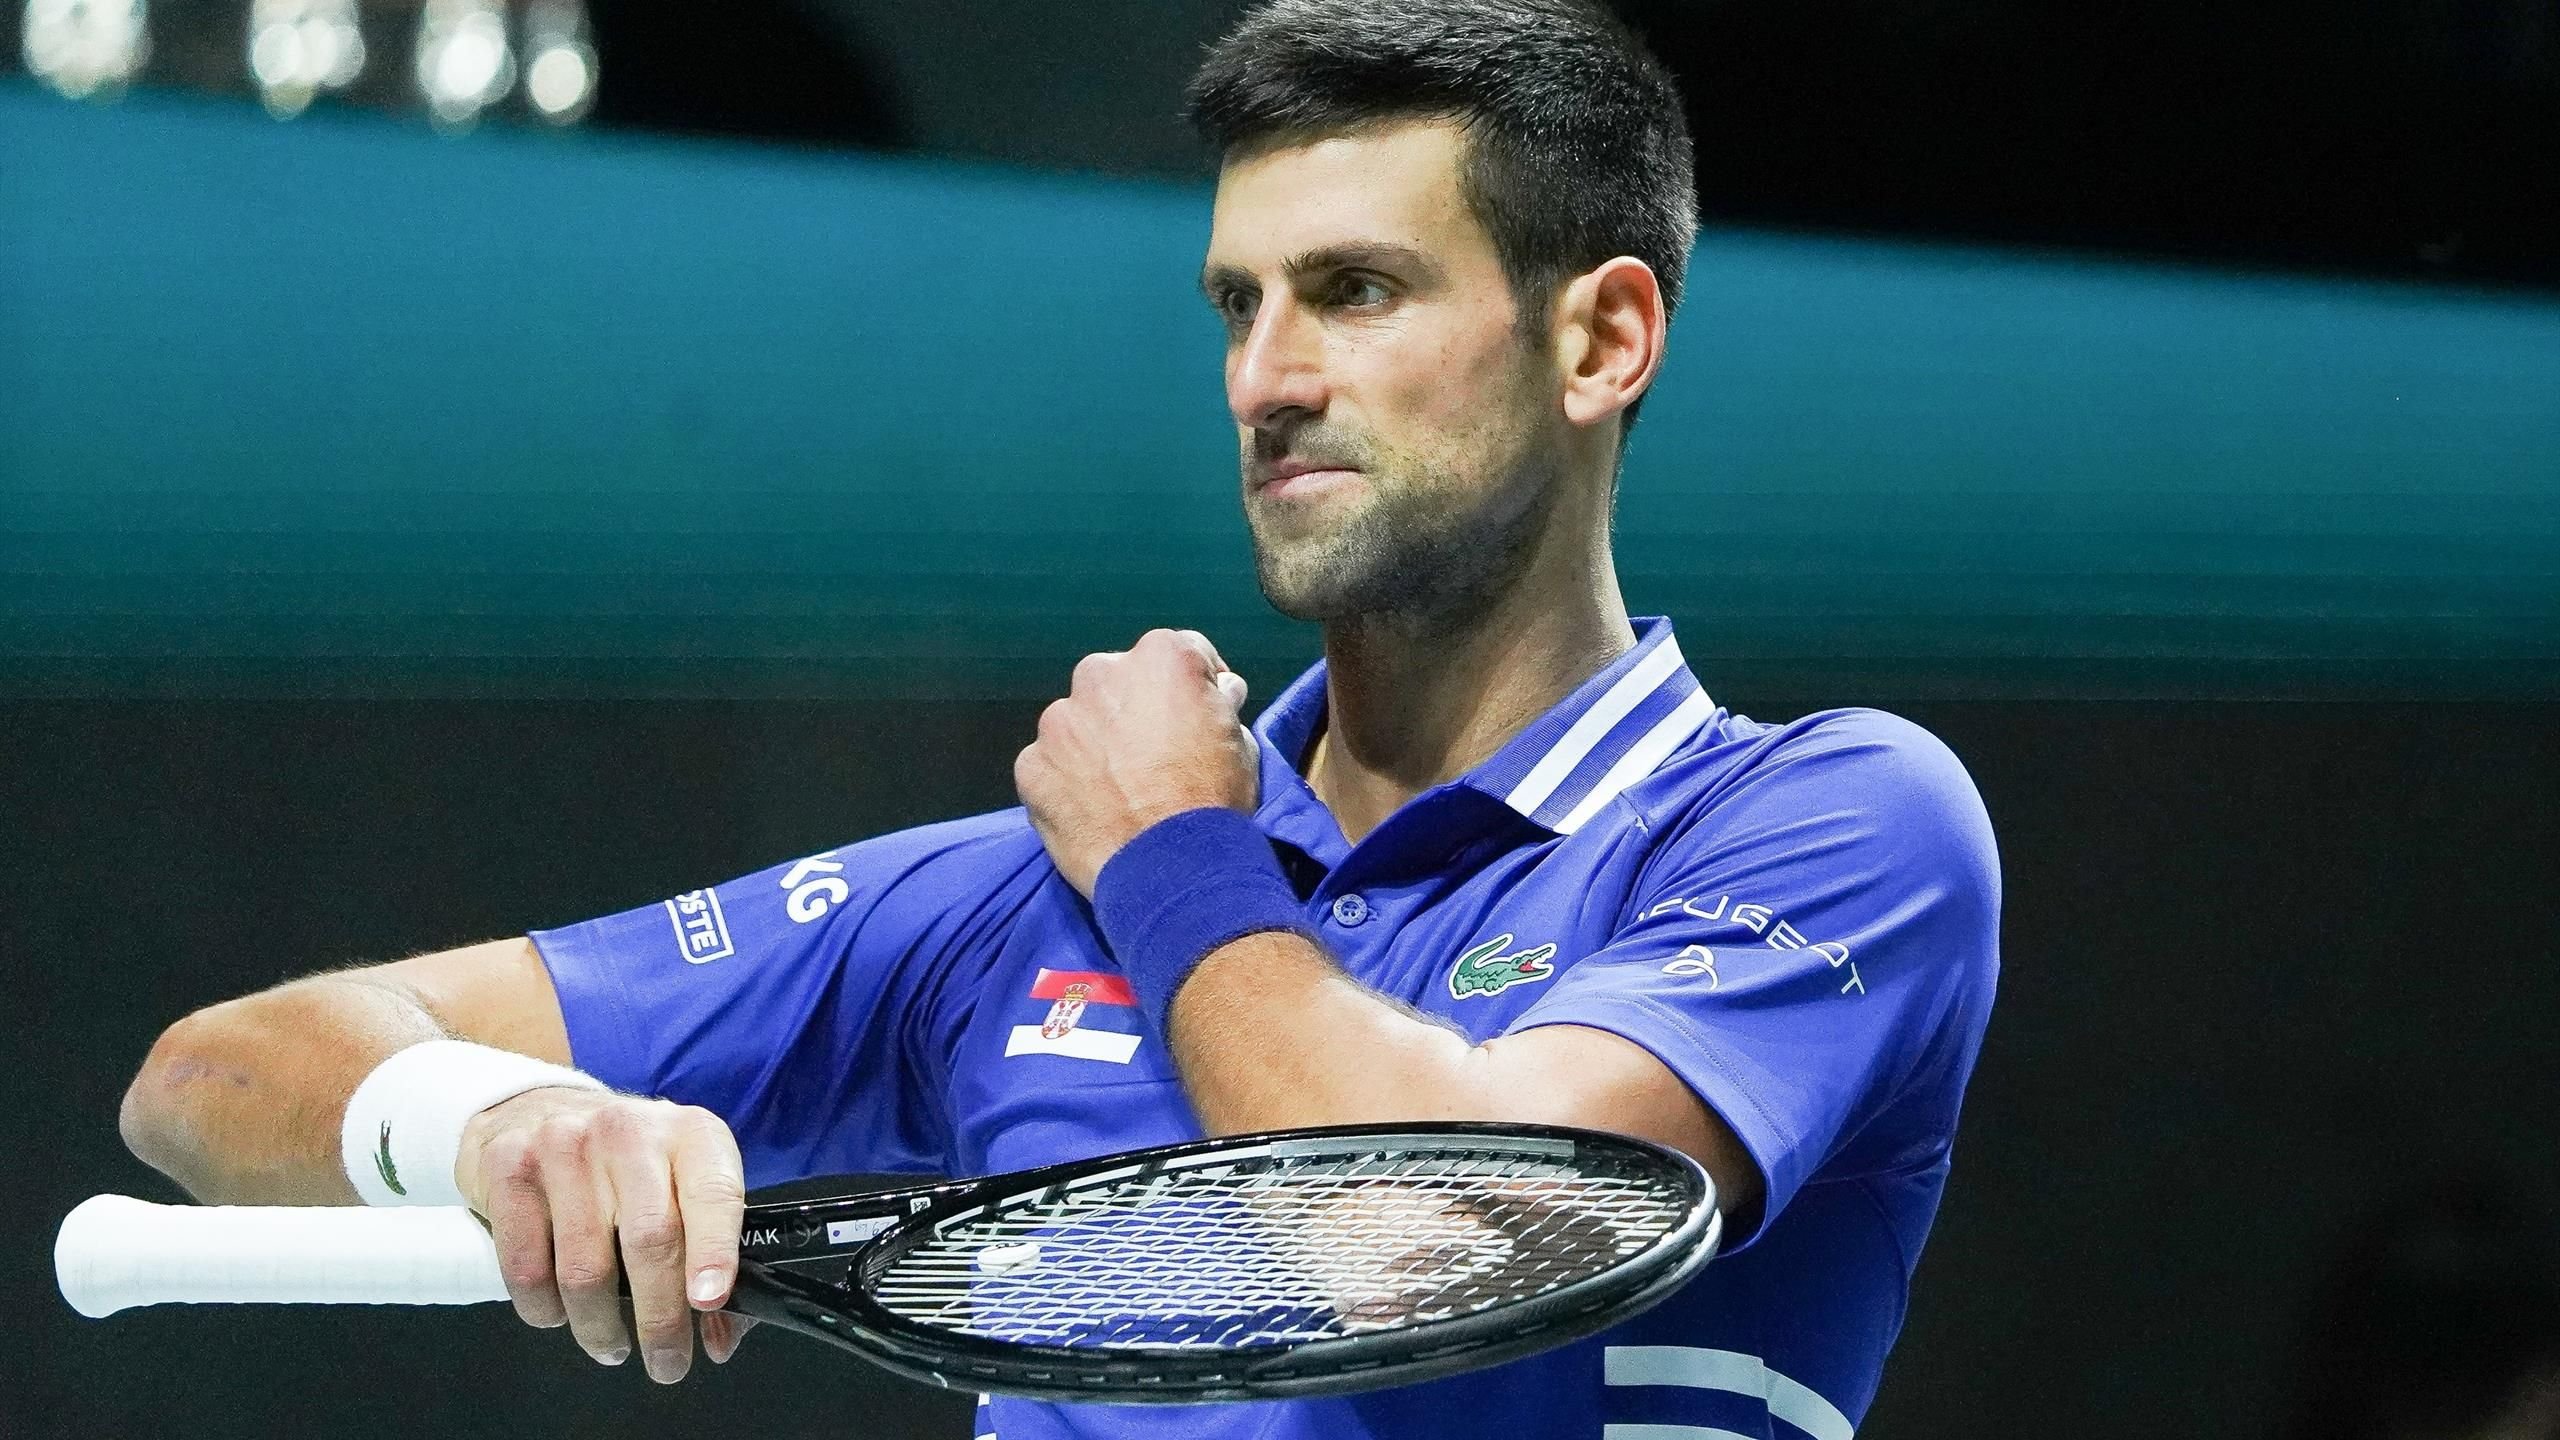  Novak Djokovici figurează pe tabloul principal al turneului de la Indian Wells